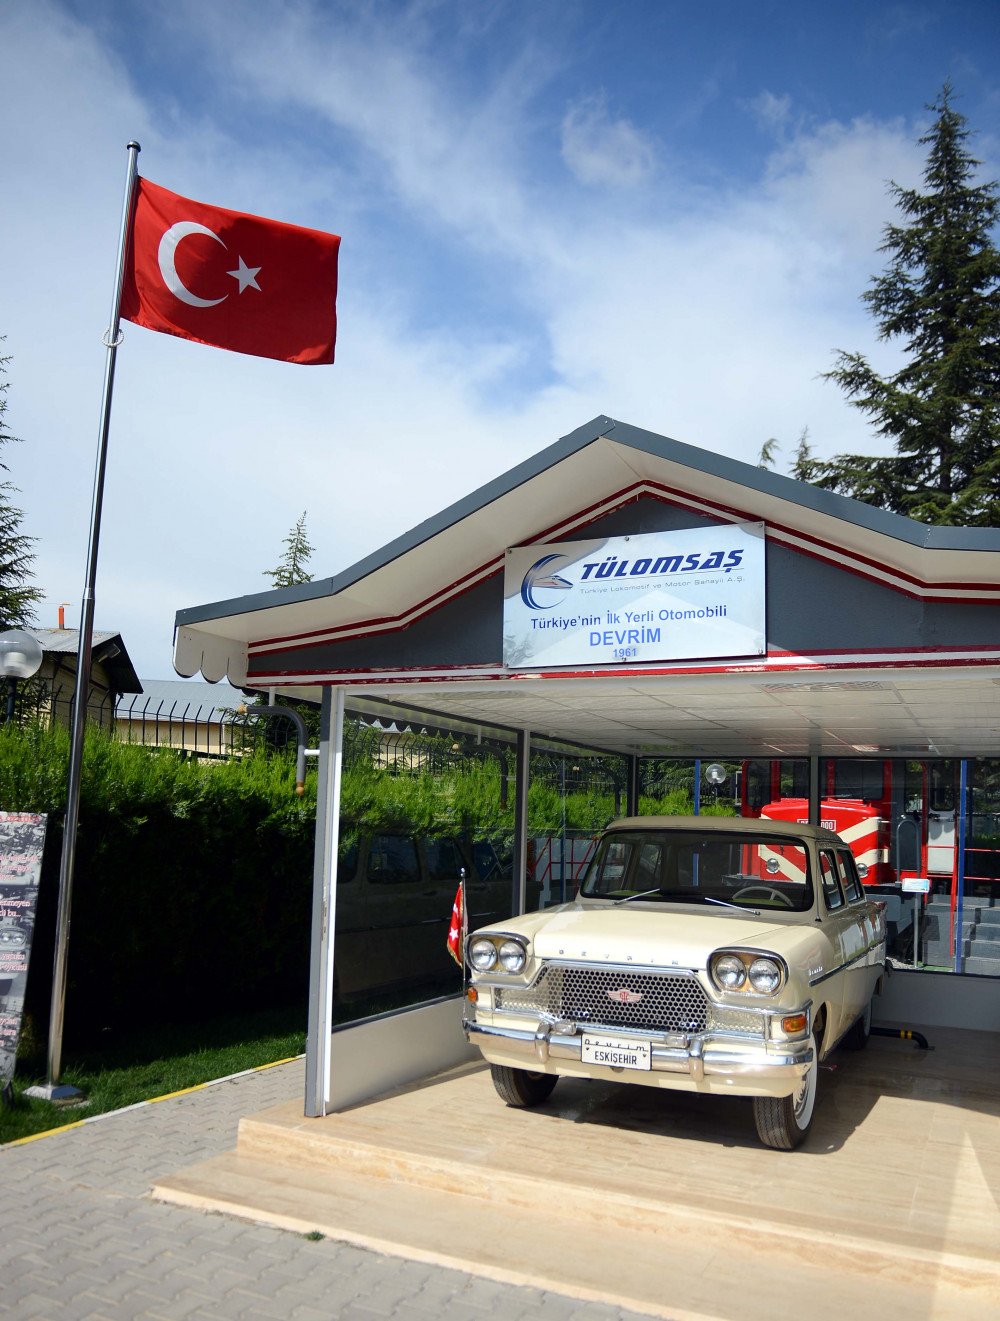 Türkiyenin ilk yerli otomobili: Devrim Arabası